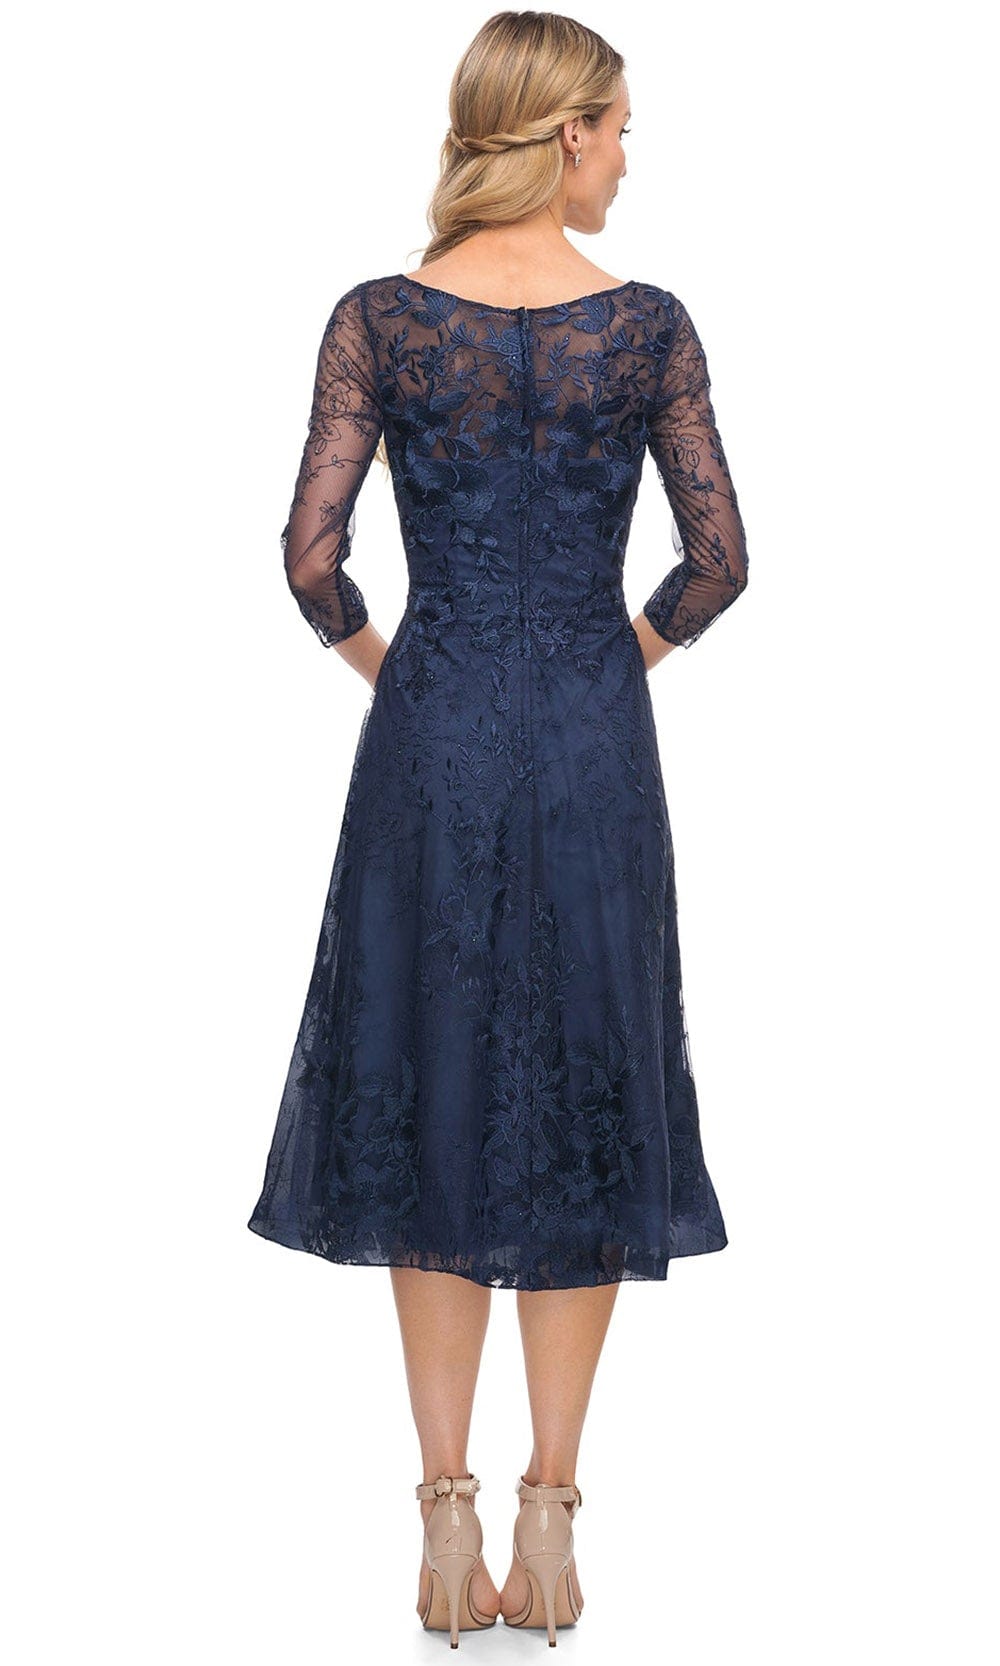 La Femme 30016 - Embroidered Lace V Neck Short Dress Special Occasion Dress